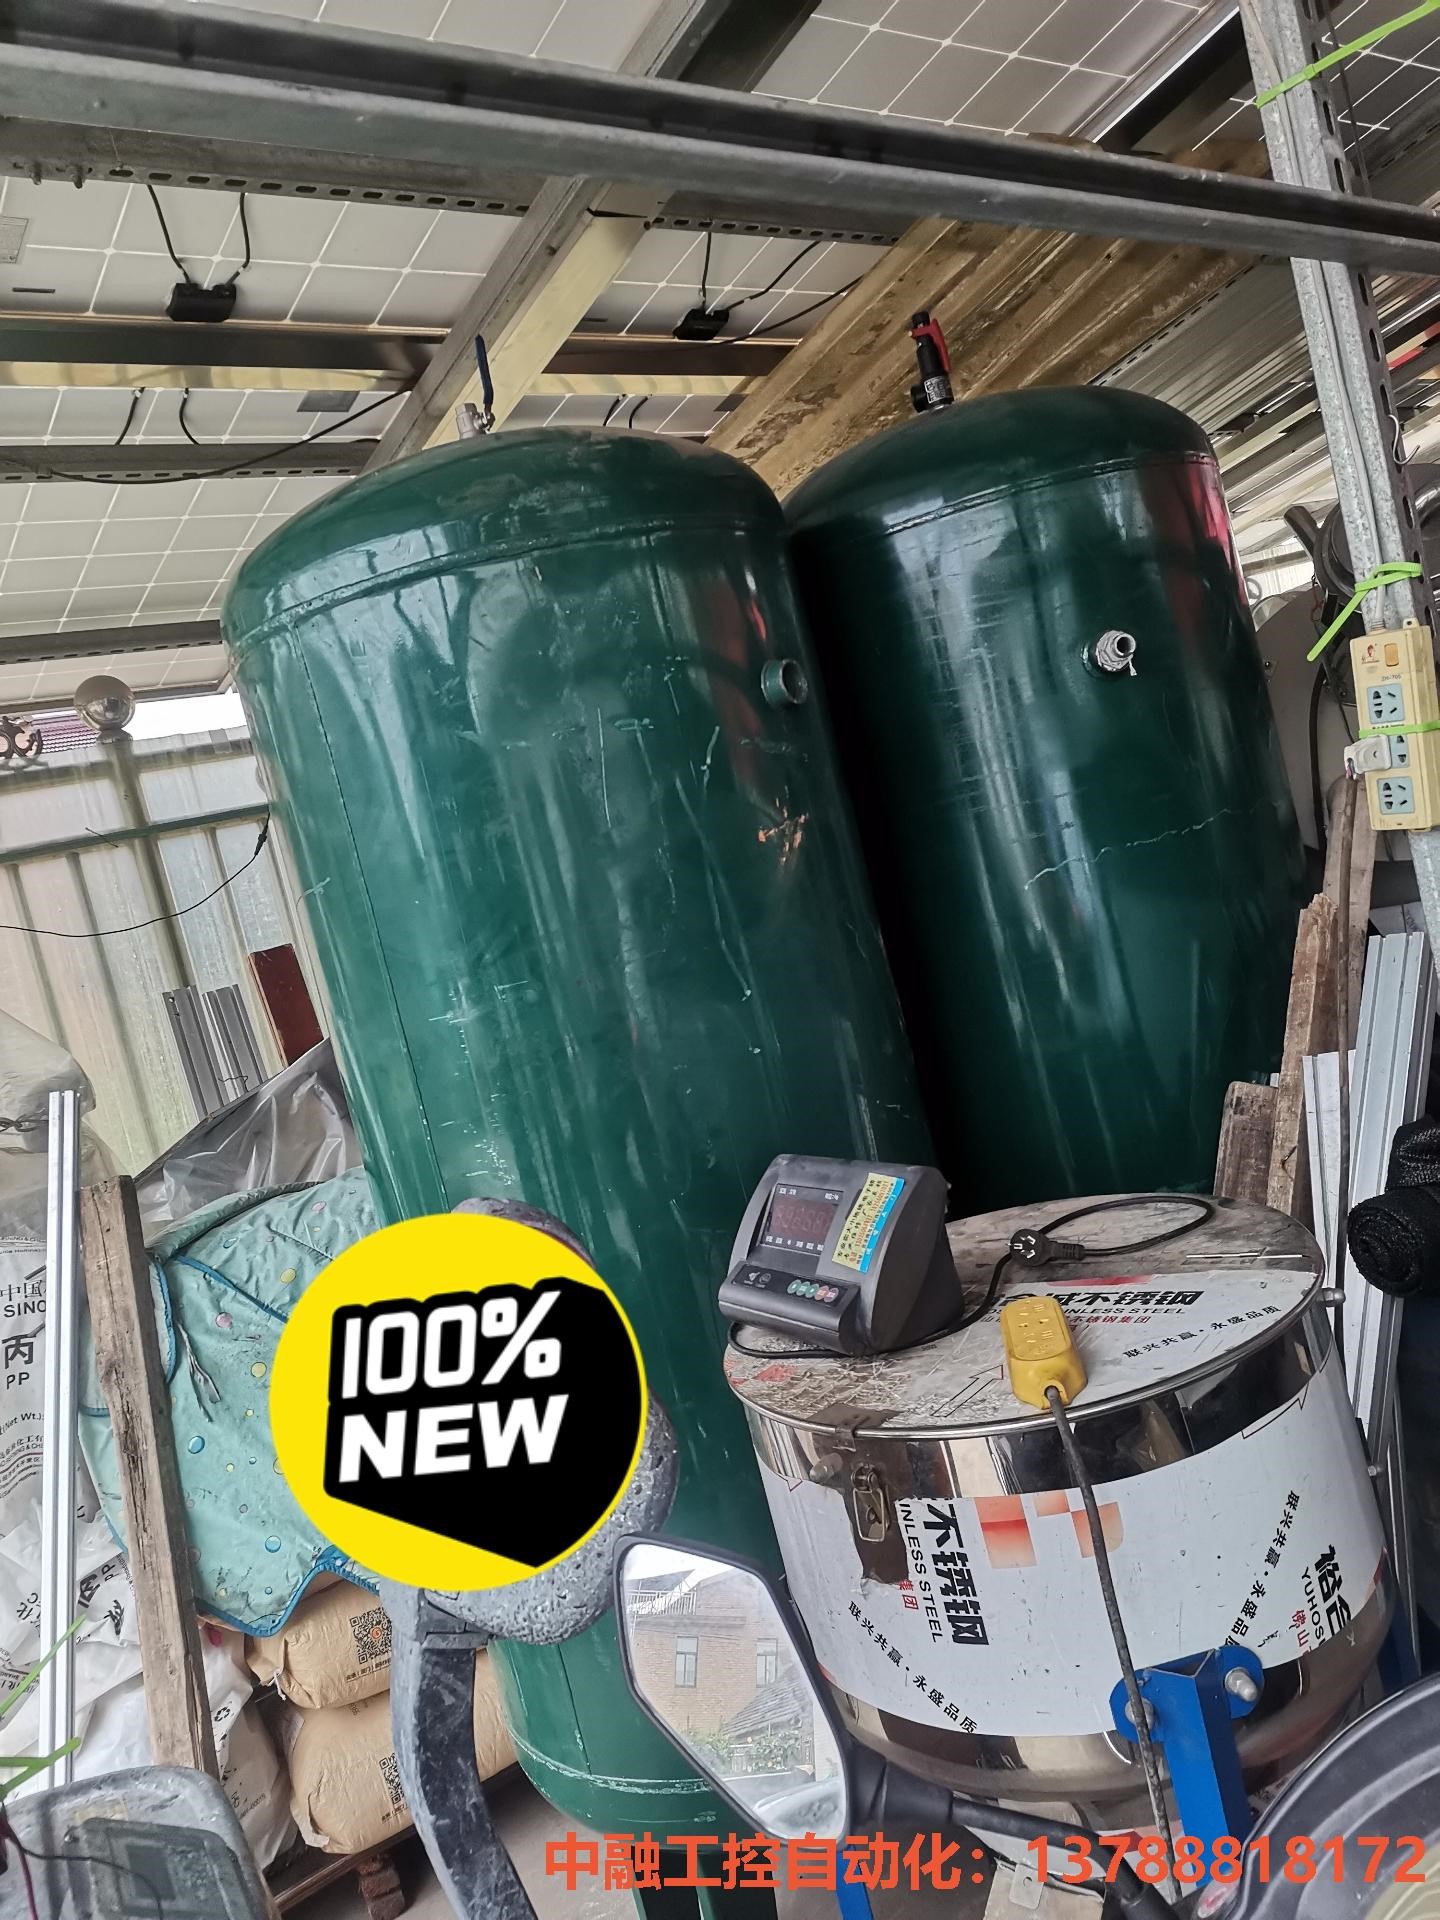 储气罐两台一个立方储气罐,成色如新,需要的联系!议价